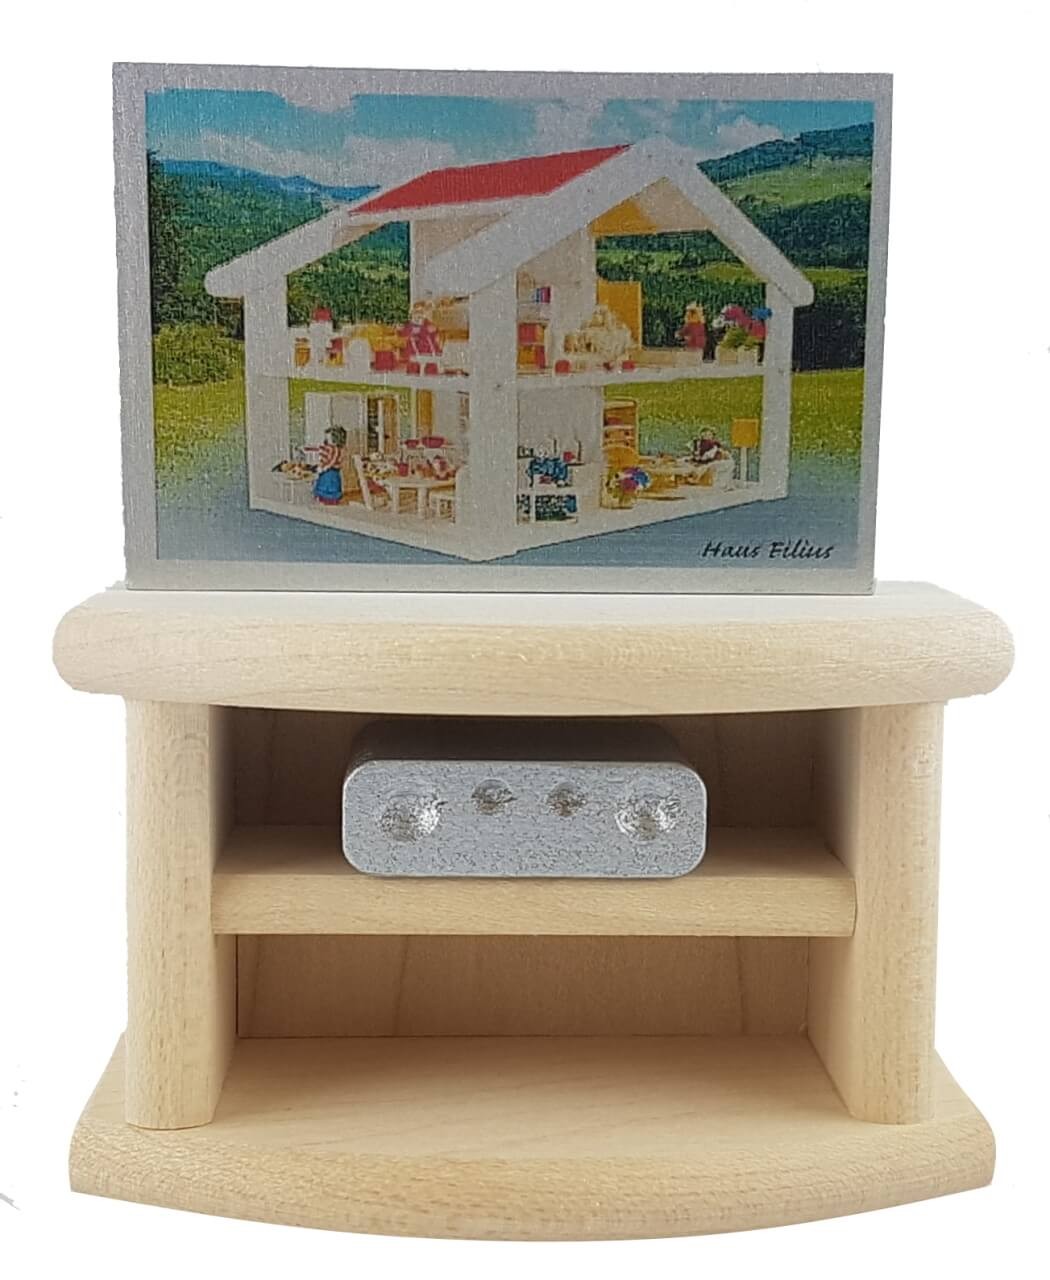 Fernseher mit Unterschrank fürs Puppenhaus von Rülke Holzspielzeug